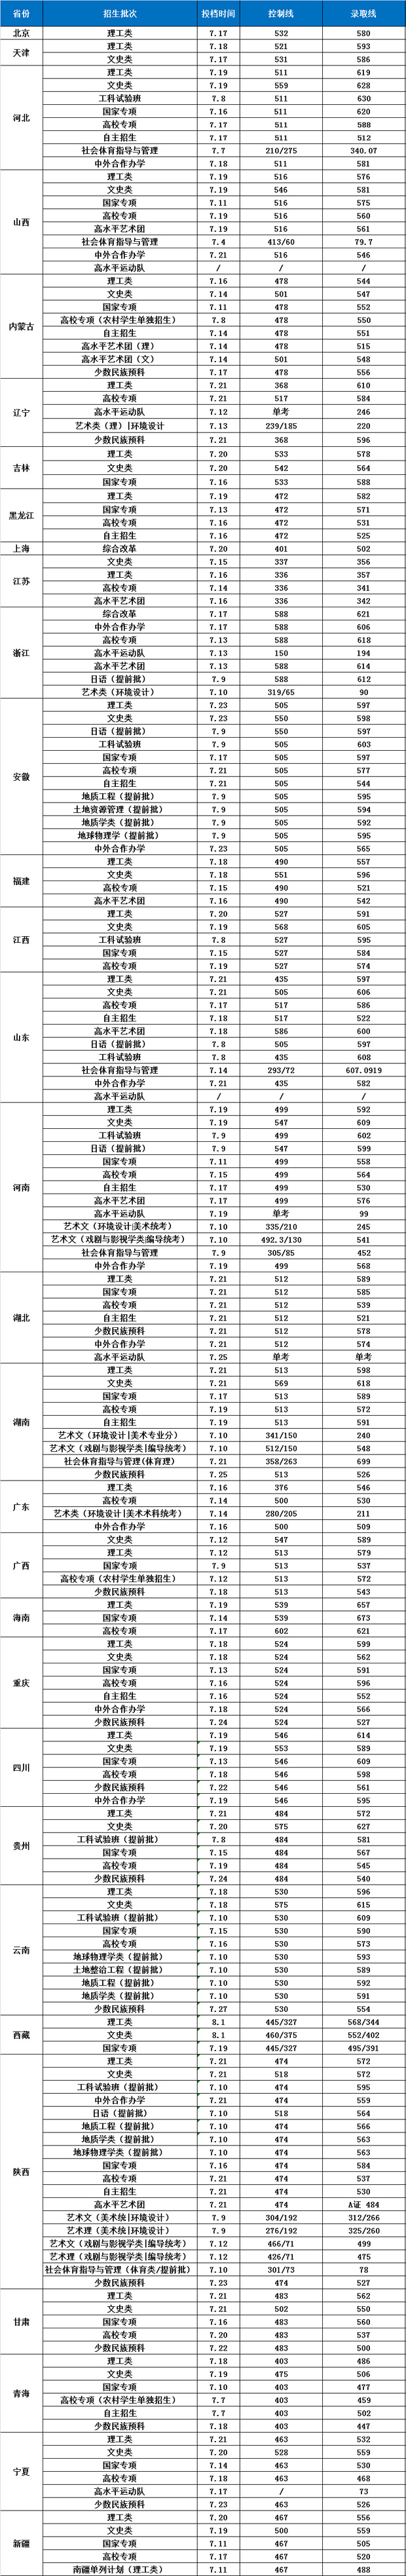 长安大学2018年分省分类型录取分数线1